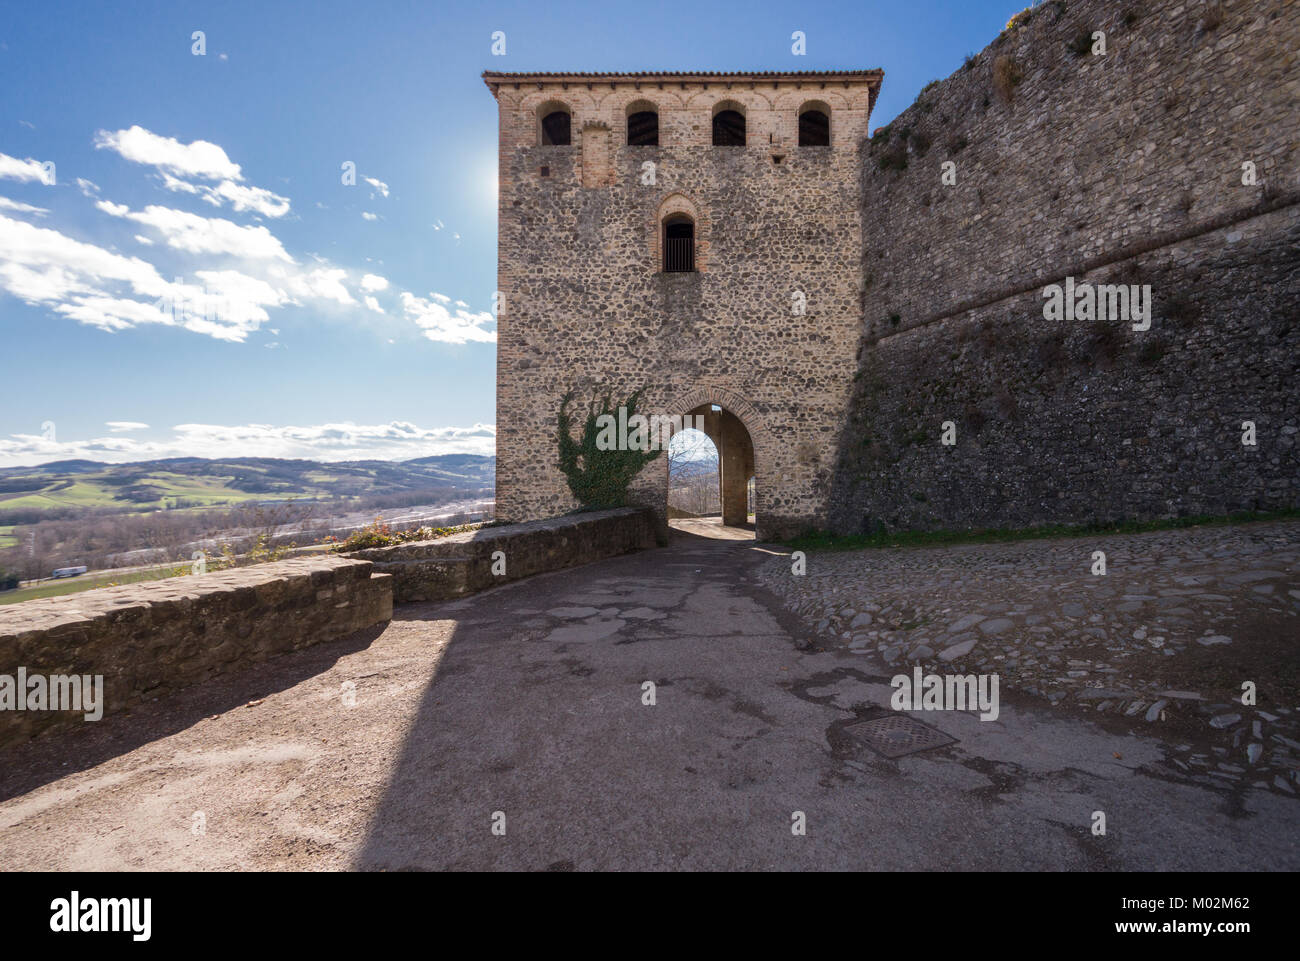 Castello di Torrechiara, XV secolo la fortezza medievale e palazzo a Langhirano vicino a Parma, Emilia Romagna, Italia settentrionale, vista esterna Foto Stock